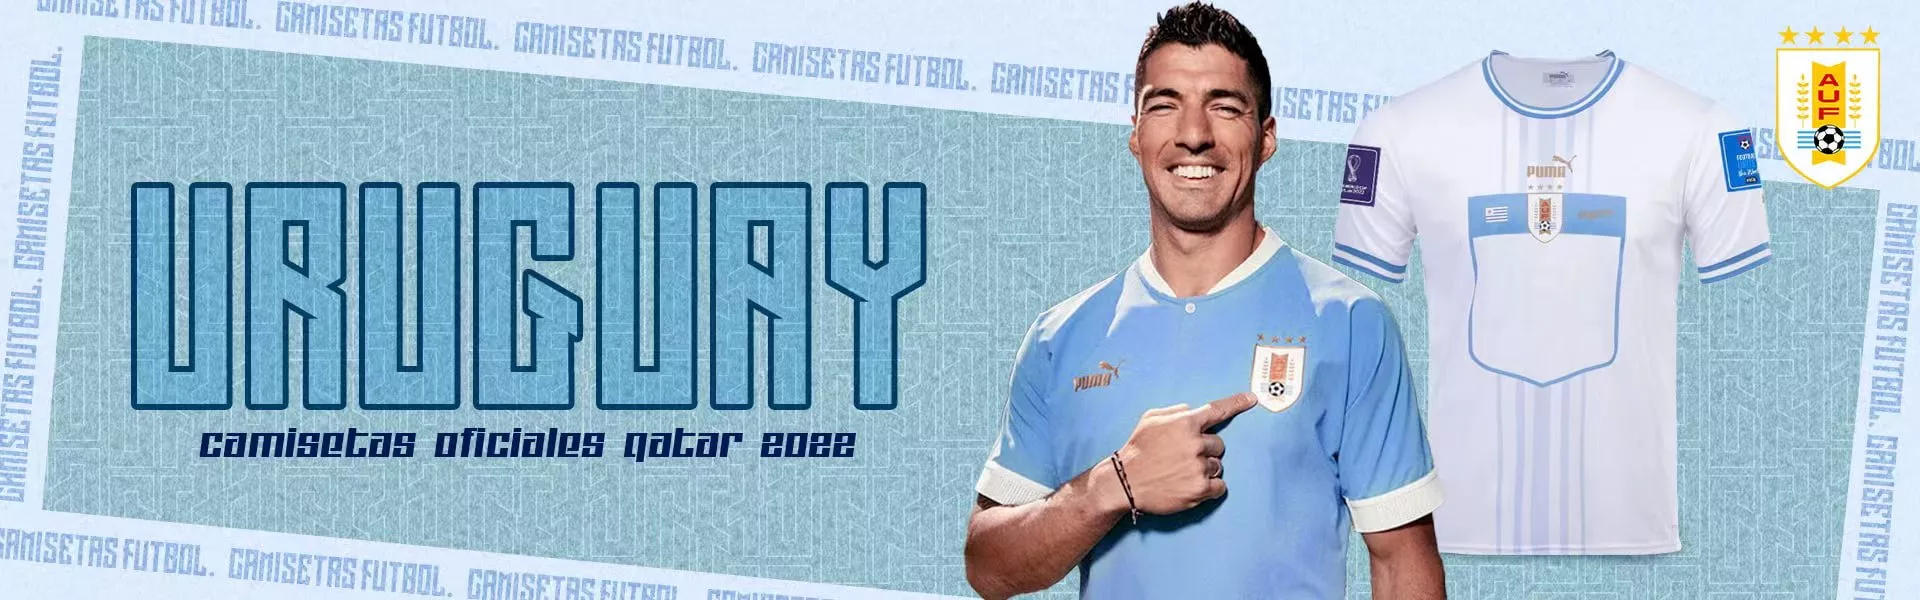 Dónde Comprar Camisetas de Fútbol en Uruguay: Mejores Lugares (2019)